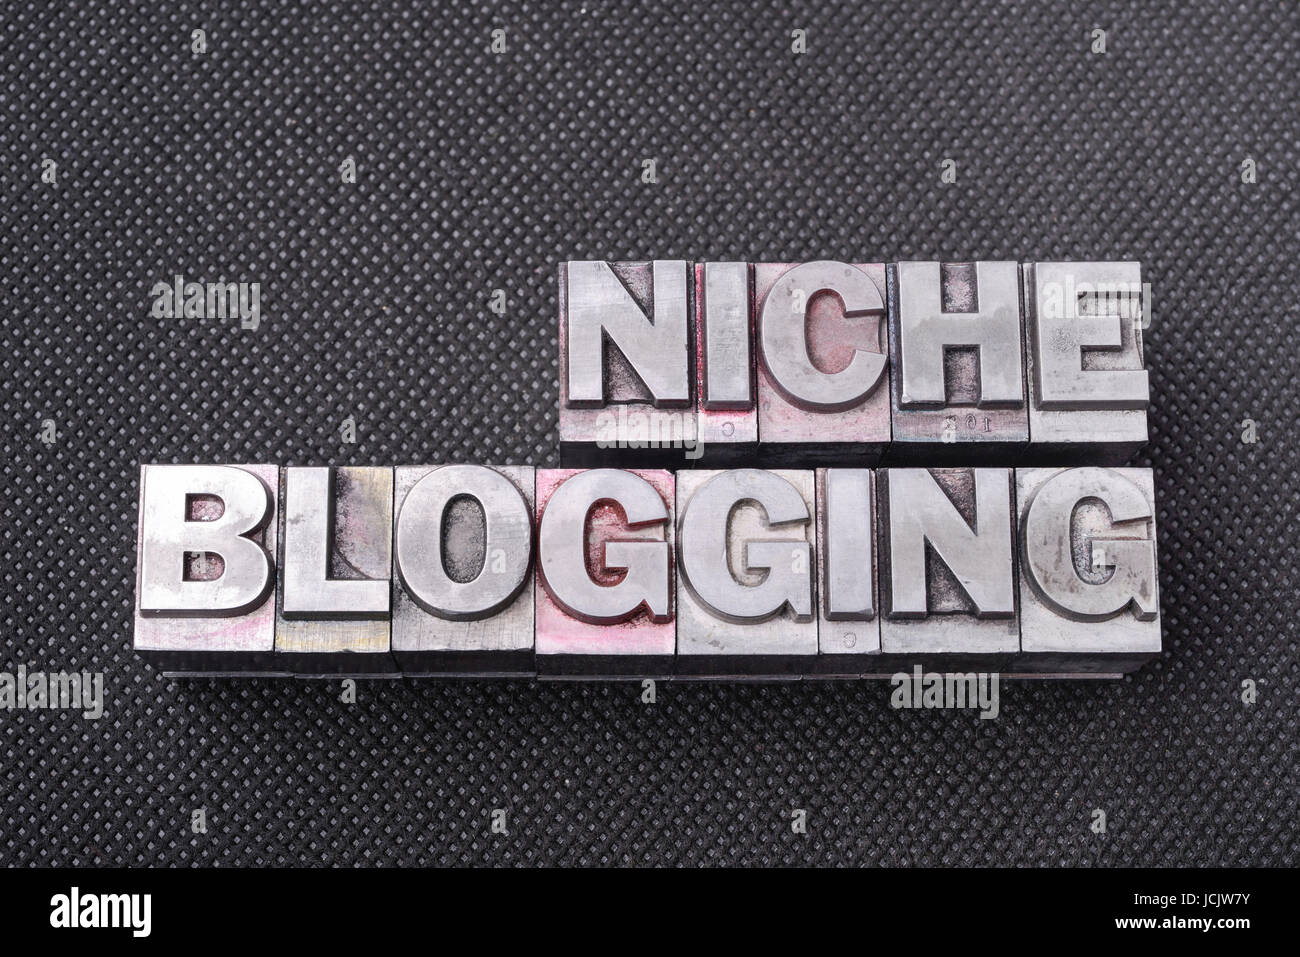 Blogs de niche de phrase faite de blocs typographiques métalliques sur la surface perforée noire Banque D'Images